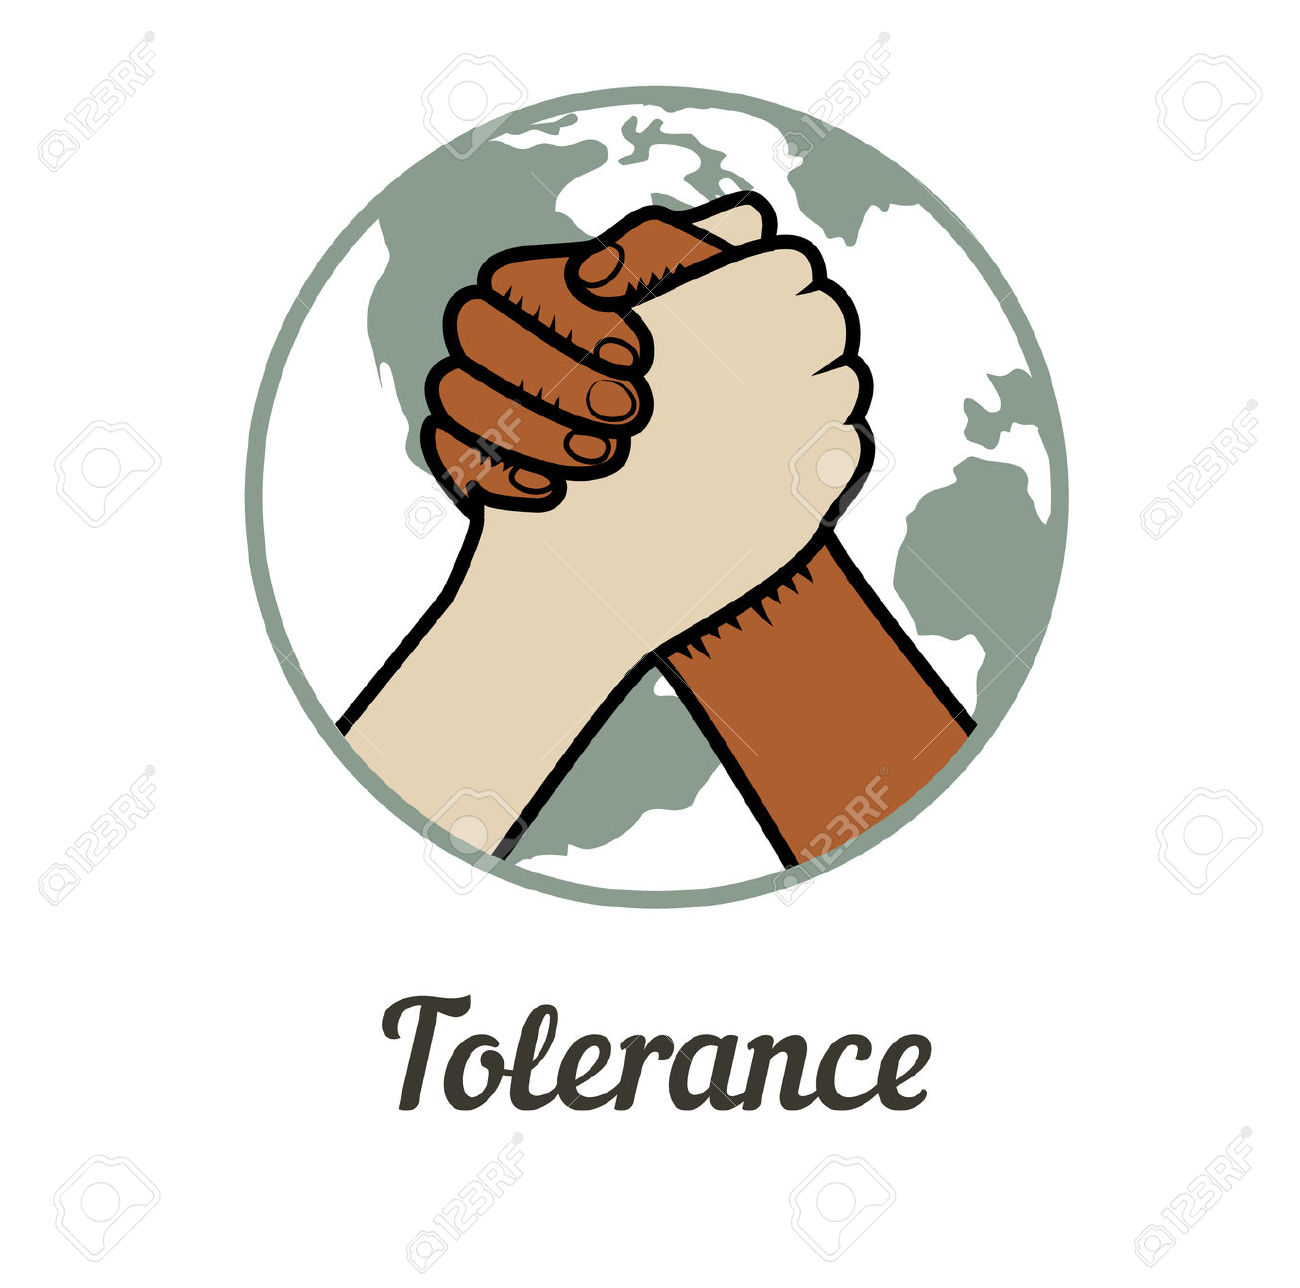 tolleranza